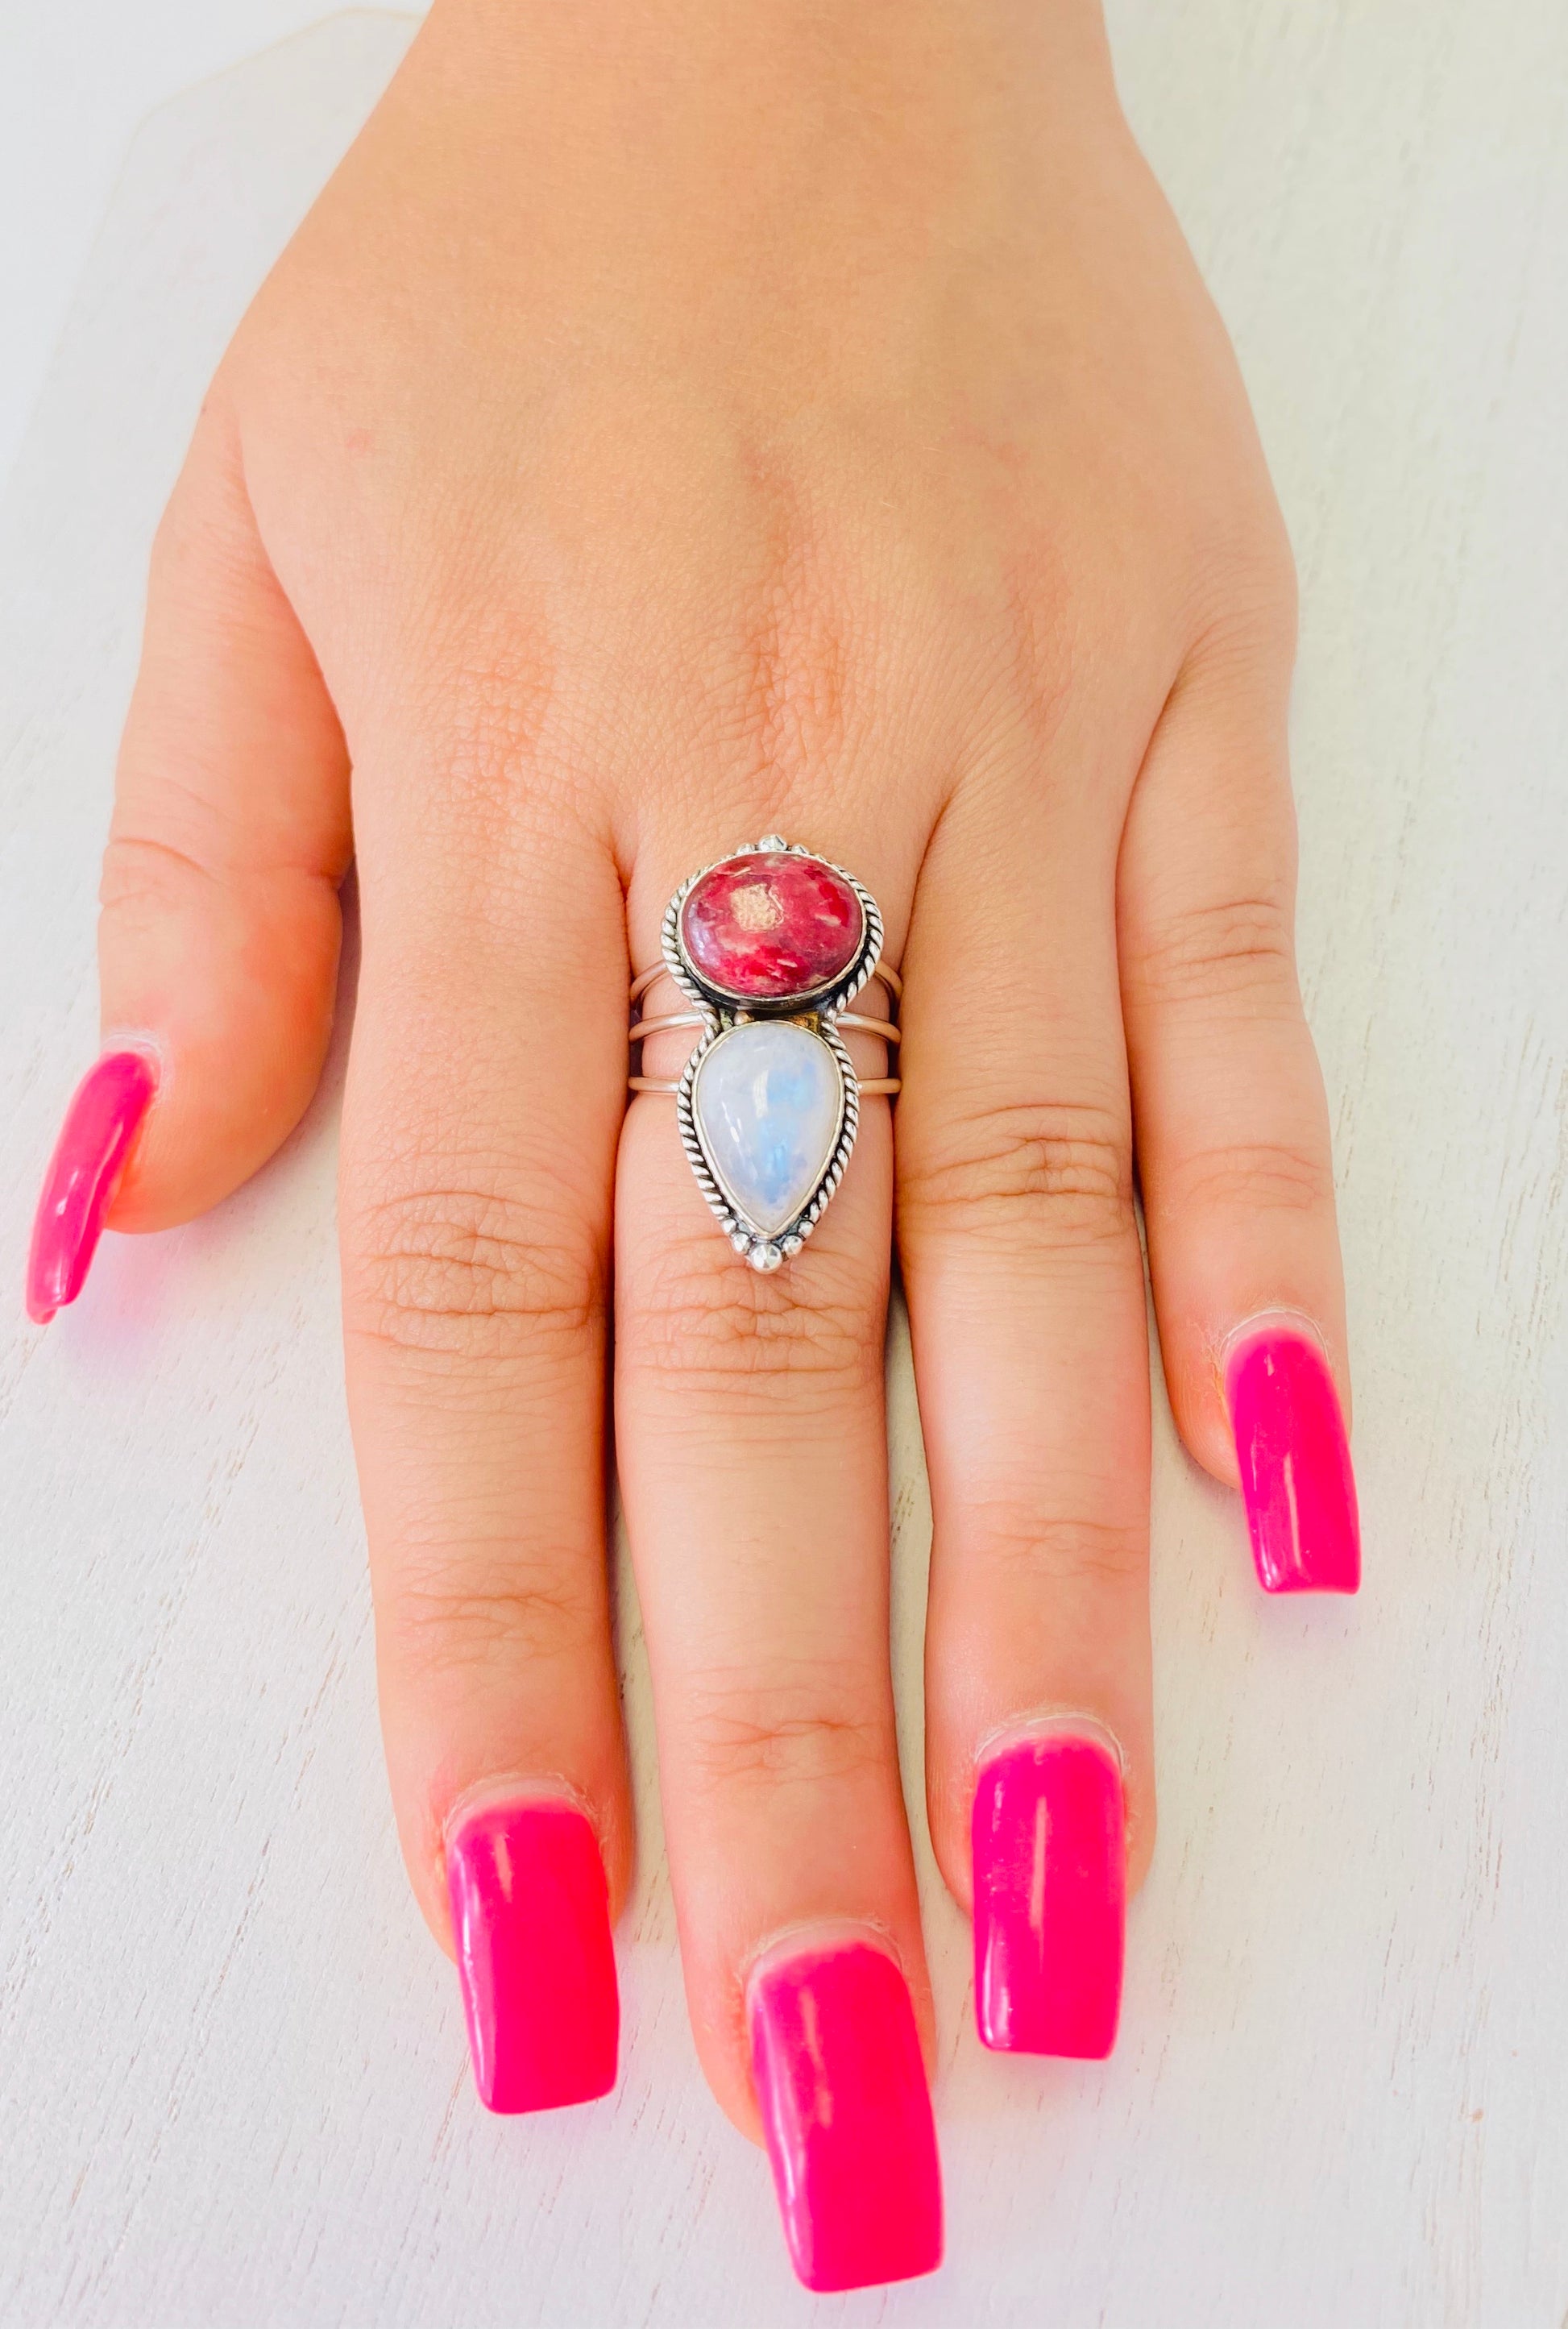 Precious Stone Mini Fairy Ring - Size 9, 8, & 7